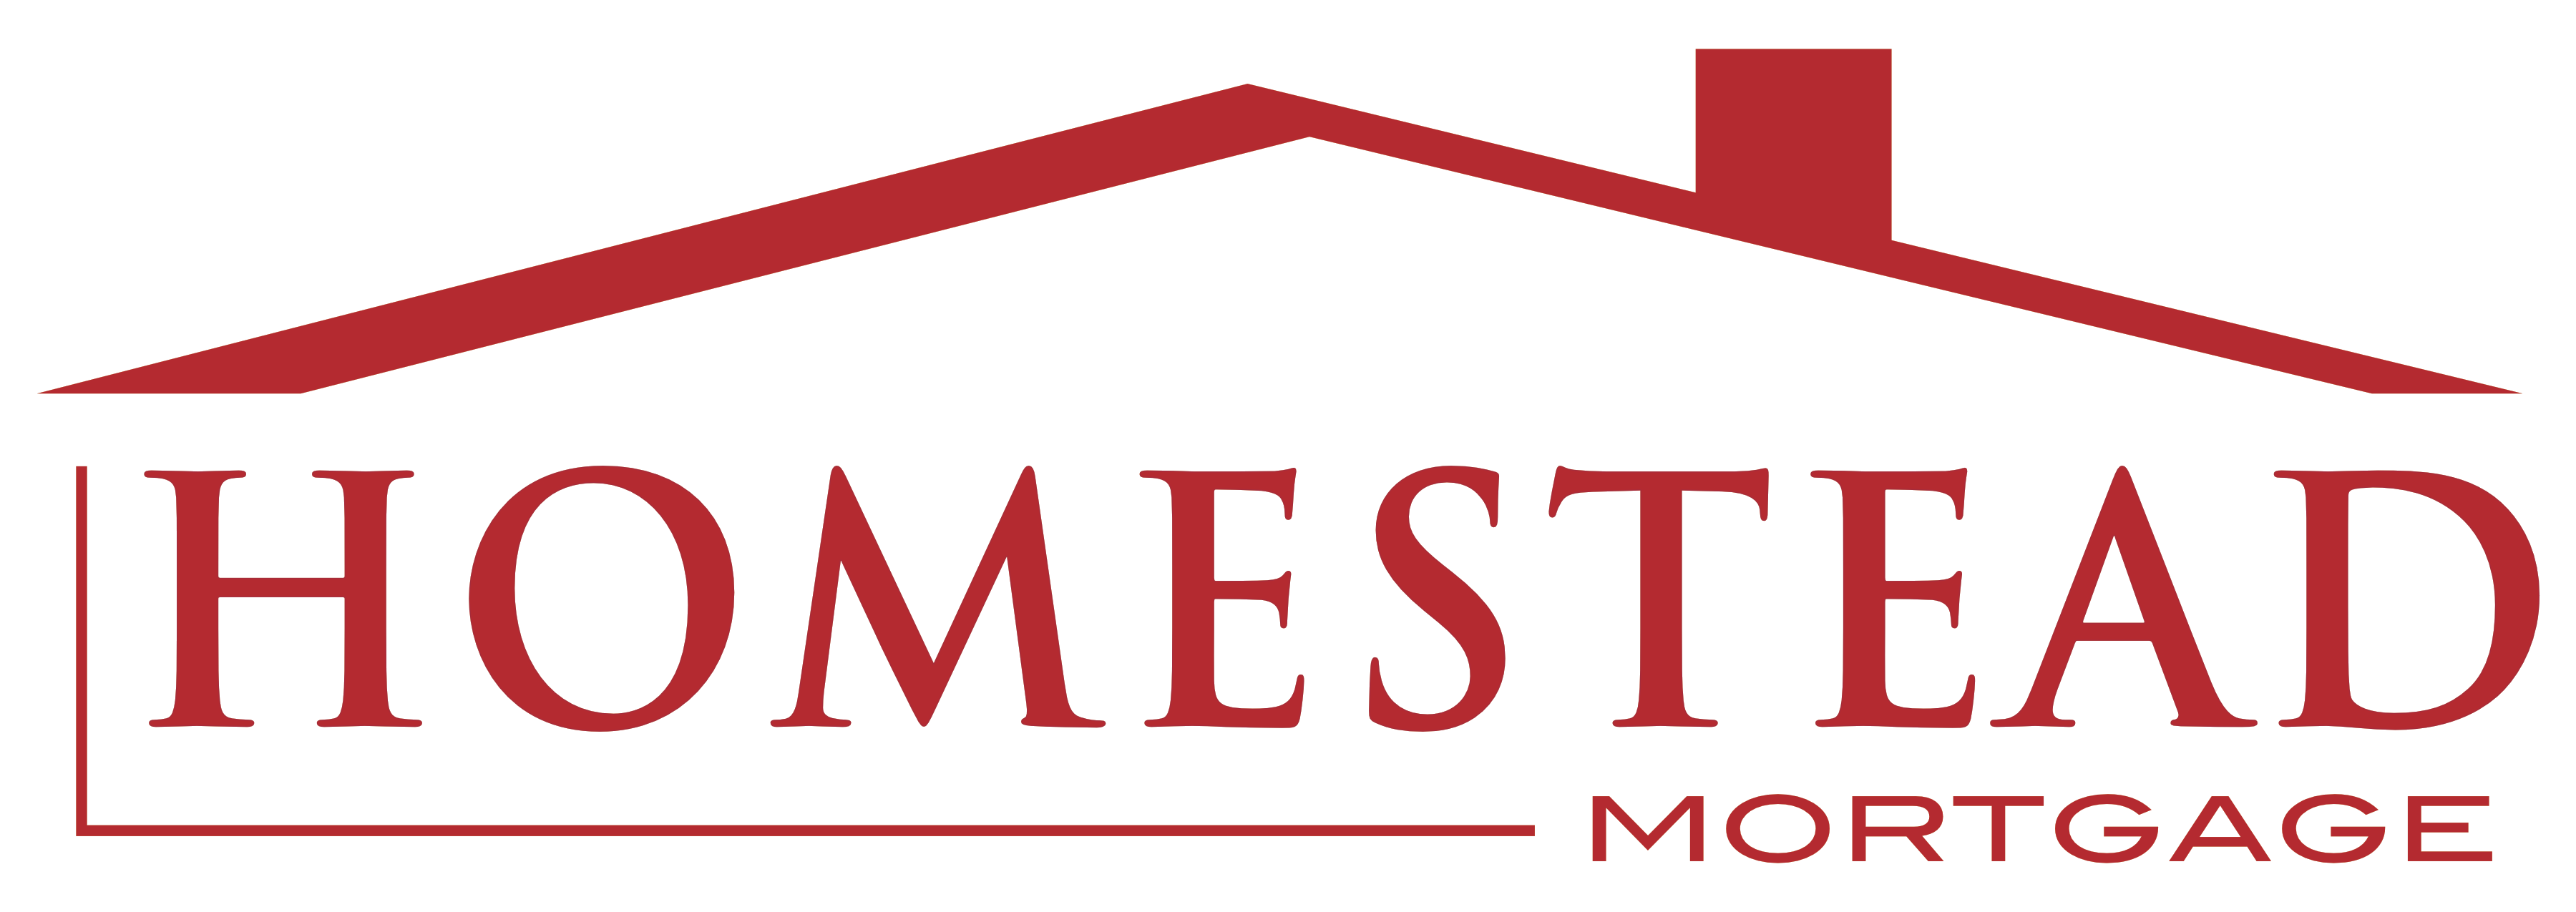 Homestead Mortgage, LLC